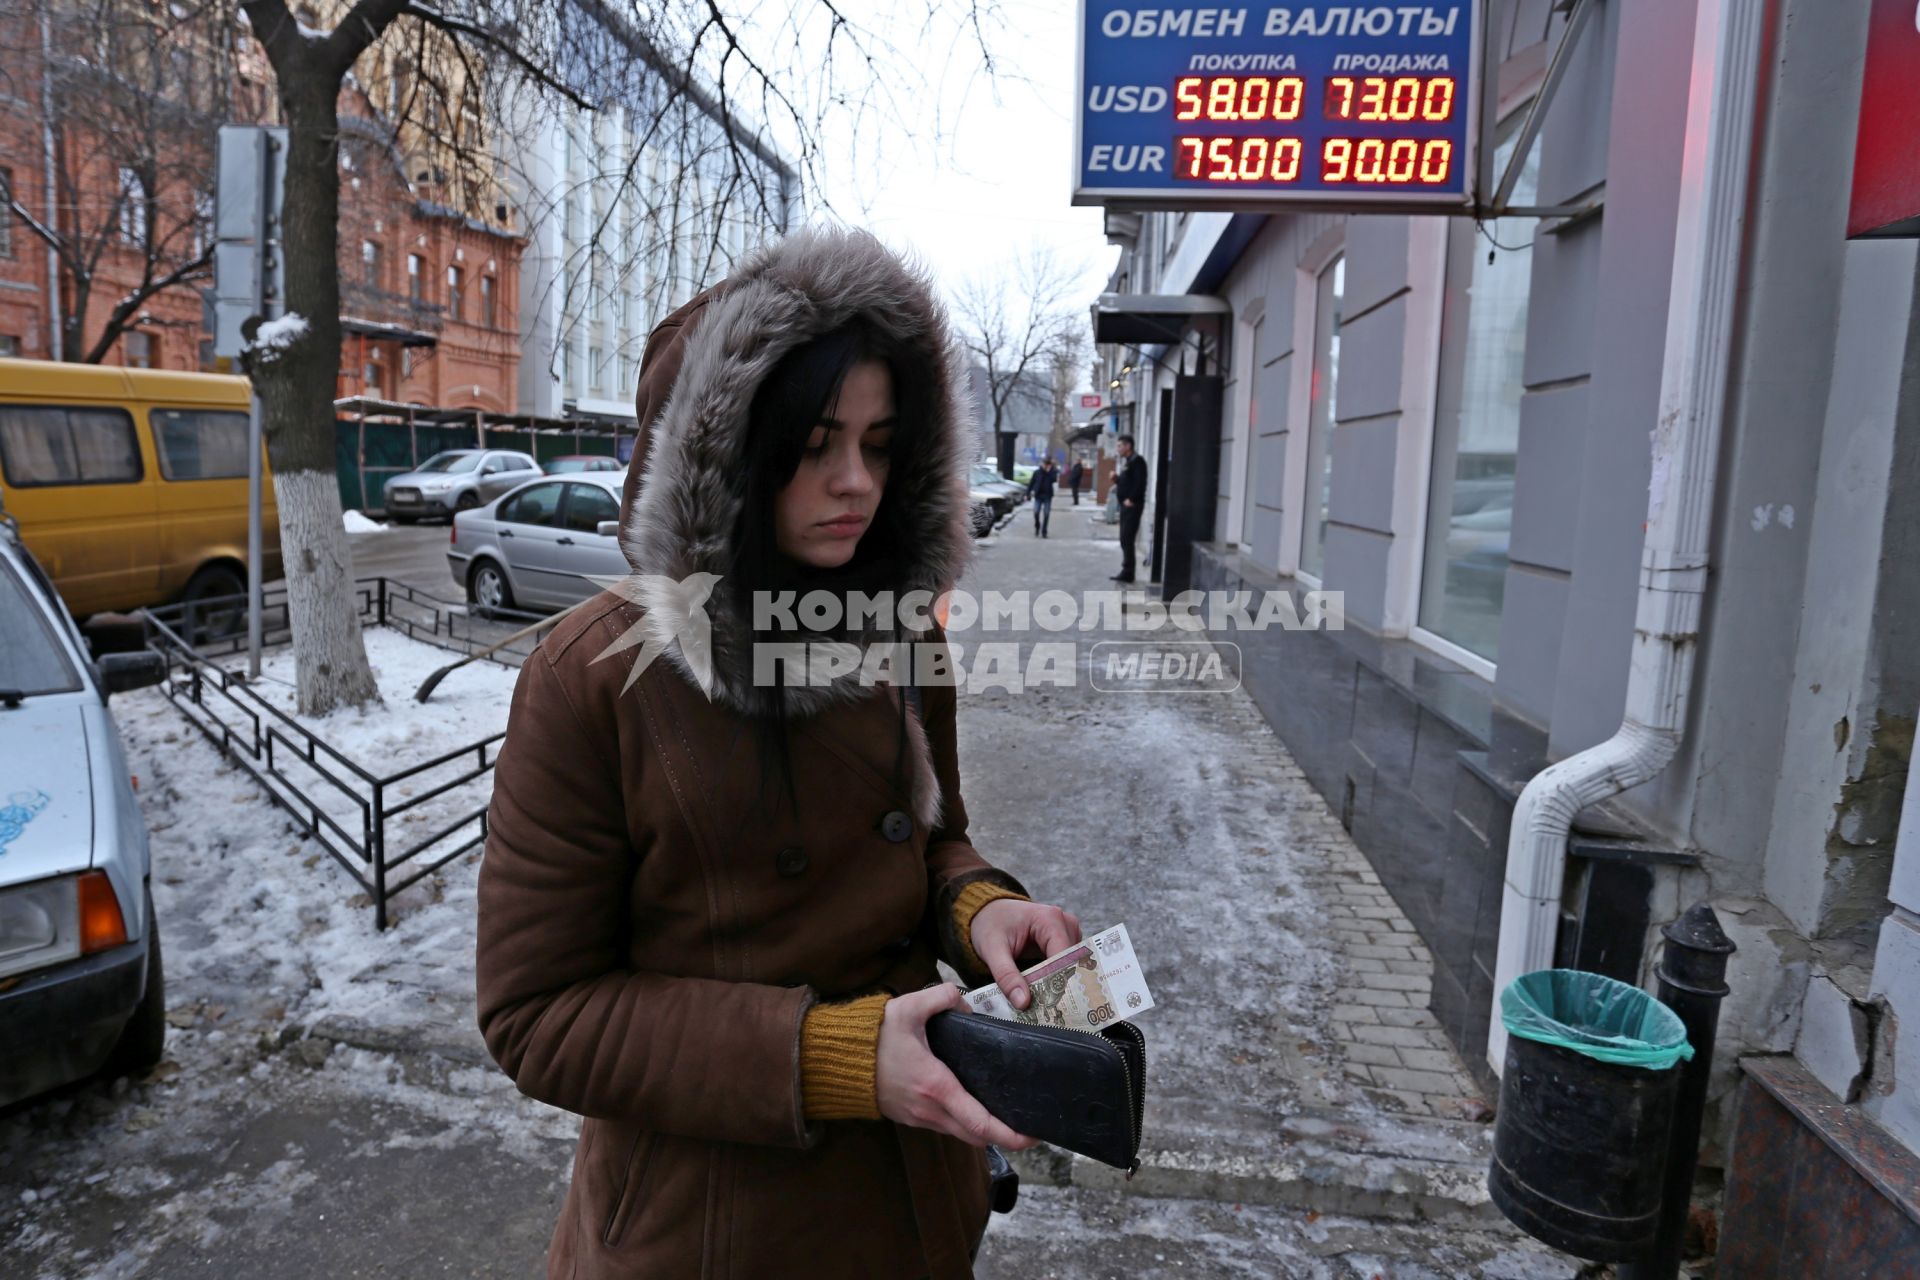 Курс доллара и евро выросли на торгах Московской биржи. На снимке: электронное табло курса доллара 73 и евро 90 рублей.